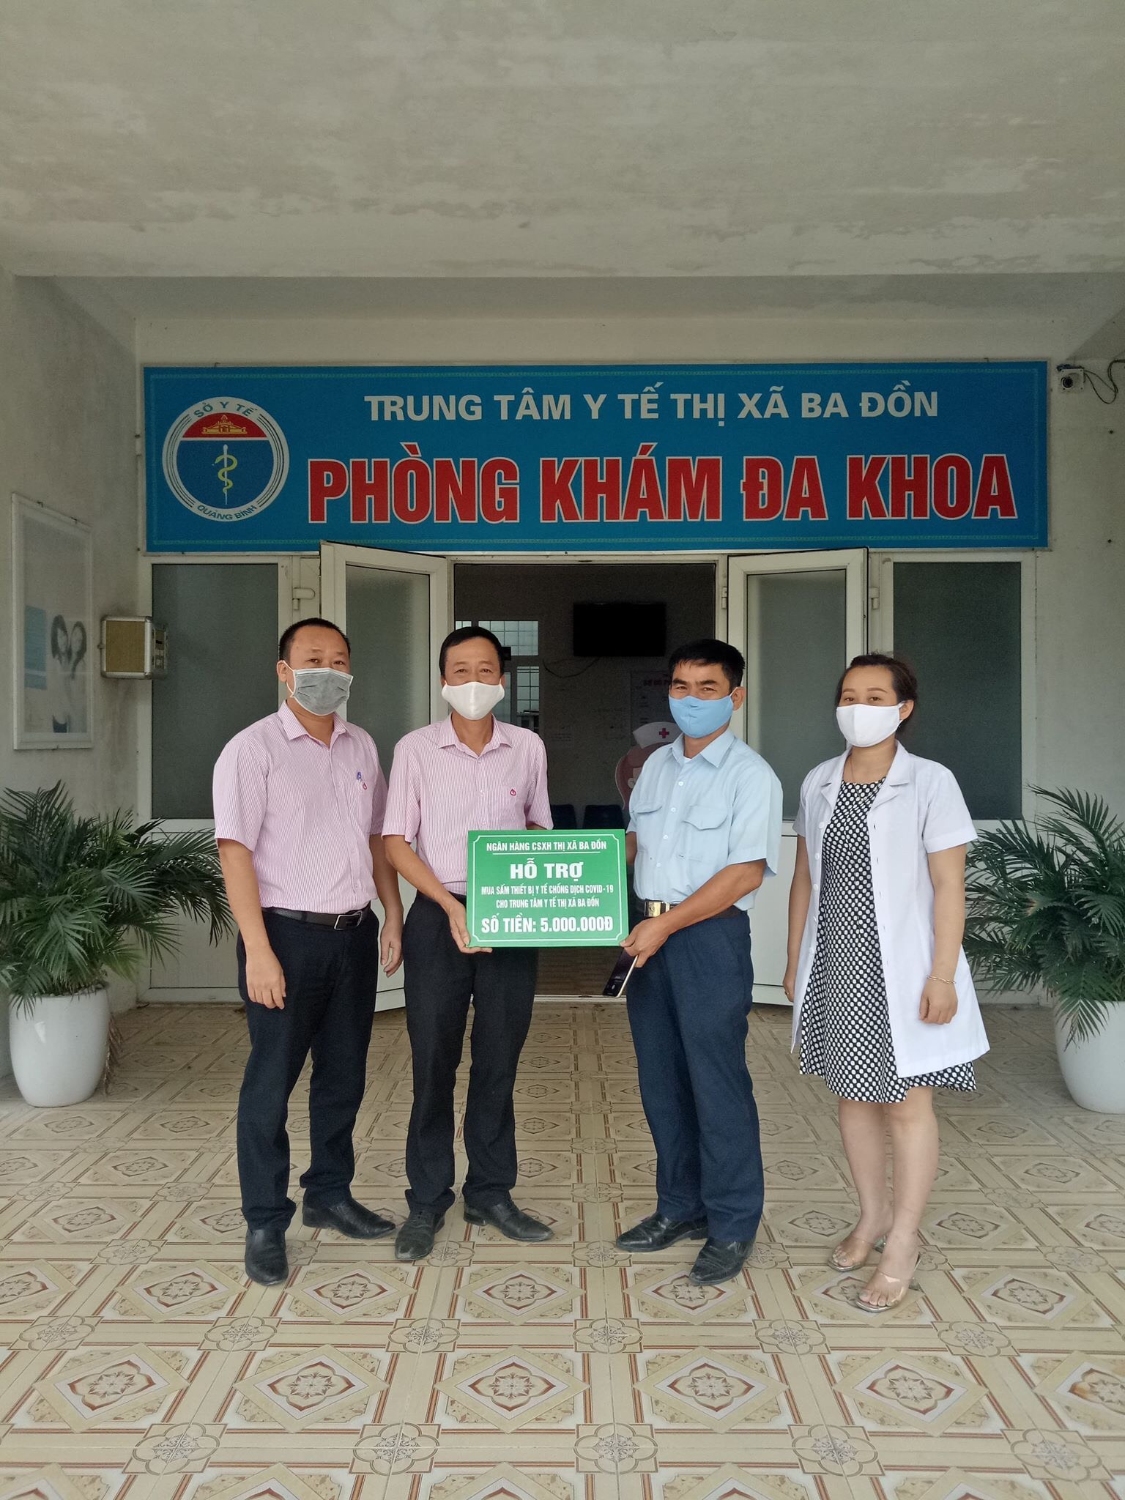  Lãnh đạo Ngân hàng Chính sách xã hội thị xã Ba Đồn trao hỗ trợ cho Trung tâm Y tế thị xã Ba Đồn để mua sắm thiết bị y tế chống dịch Covid-19.